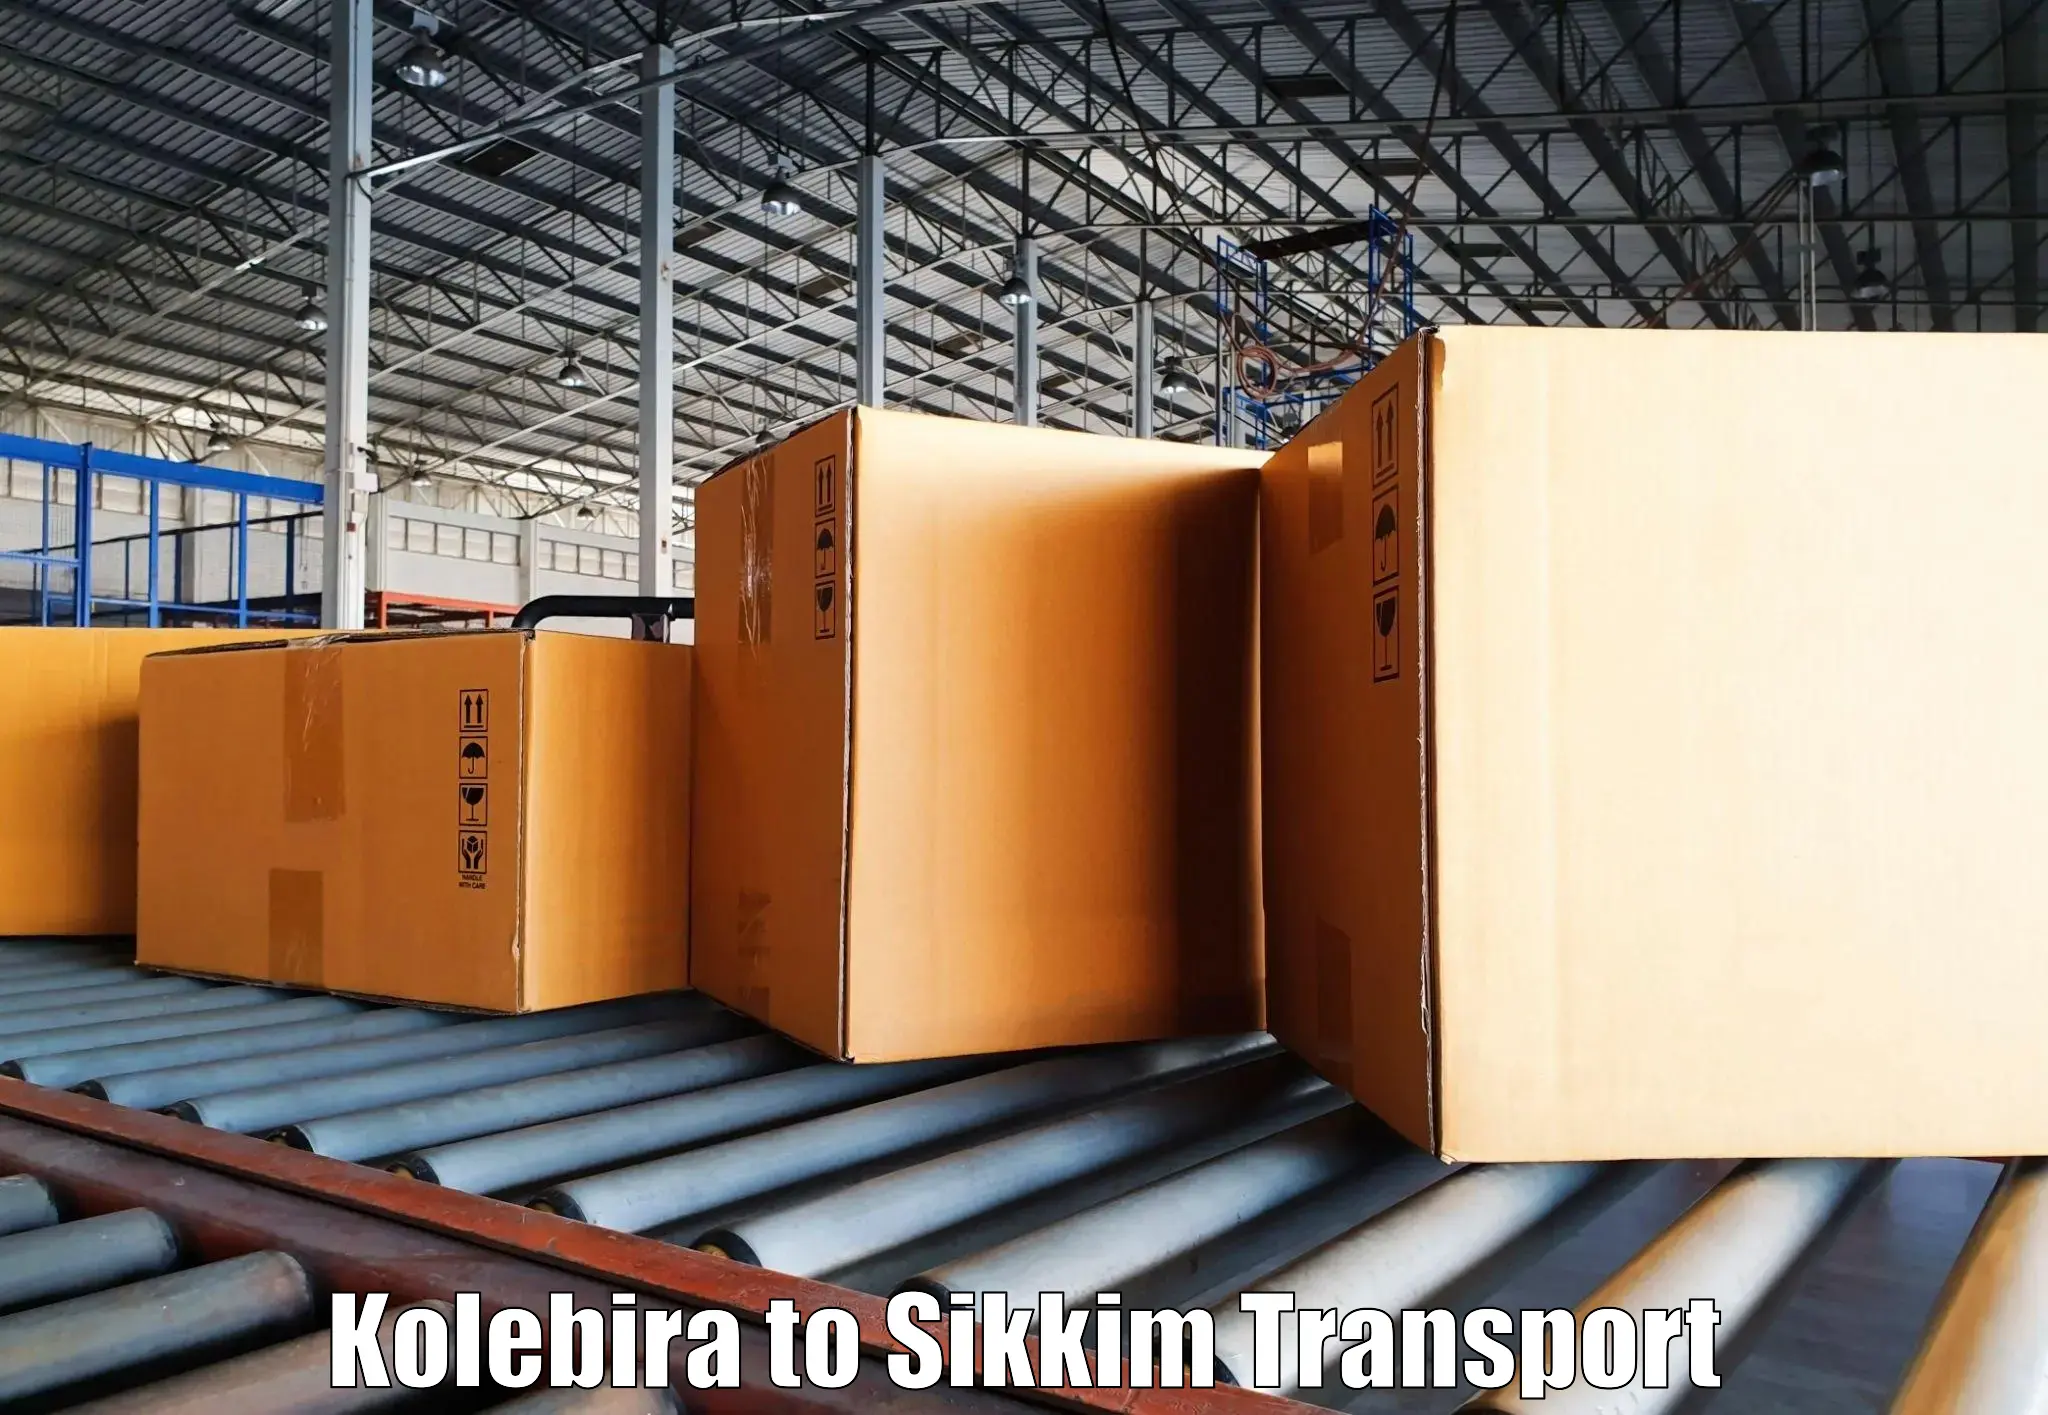 Bike shipping service Kolebira to Ranipool